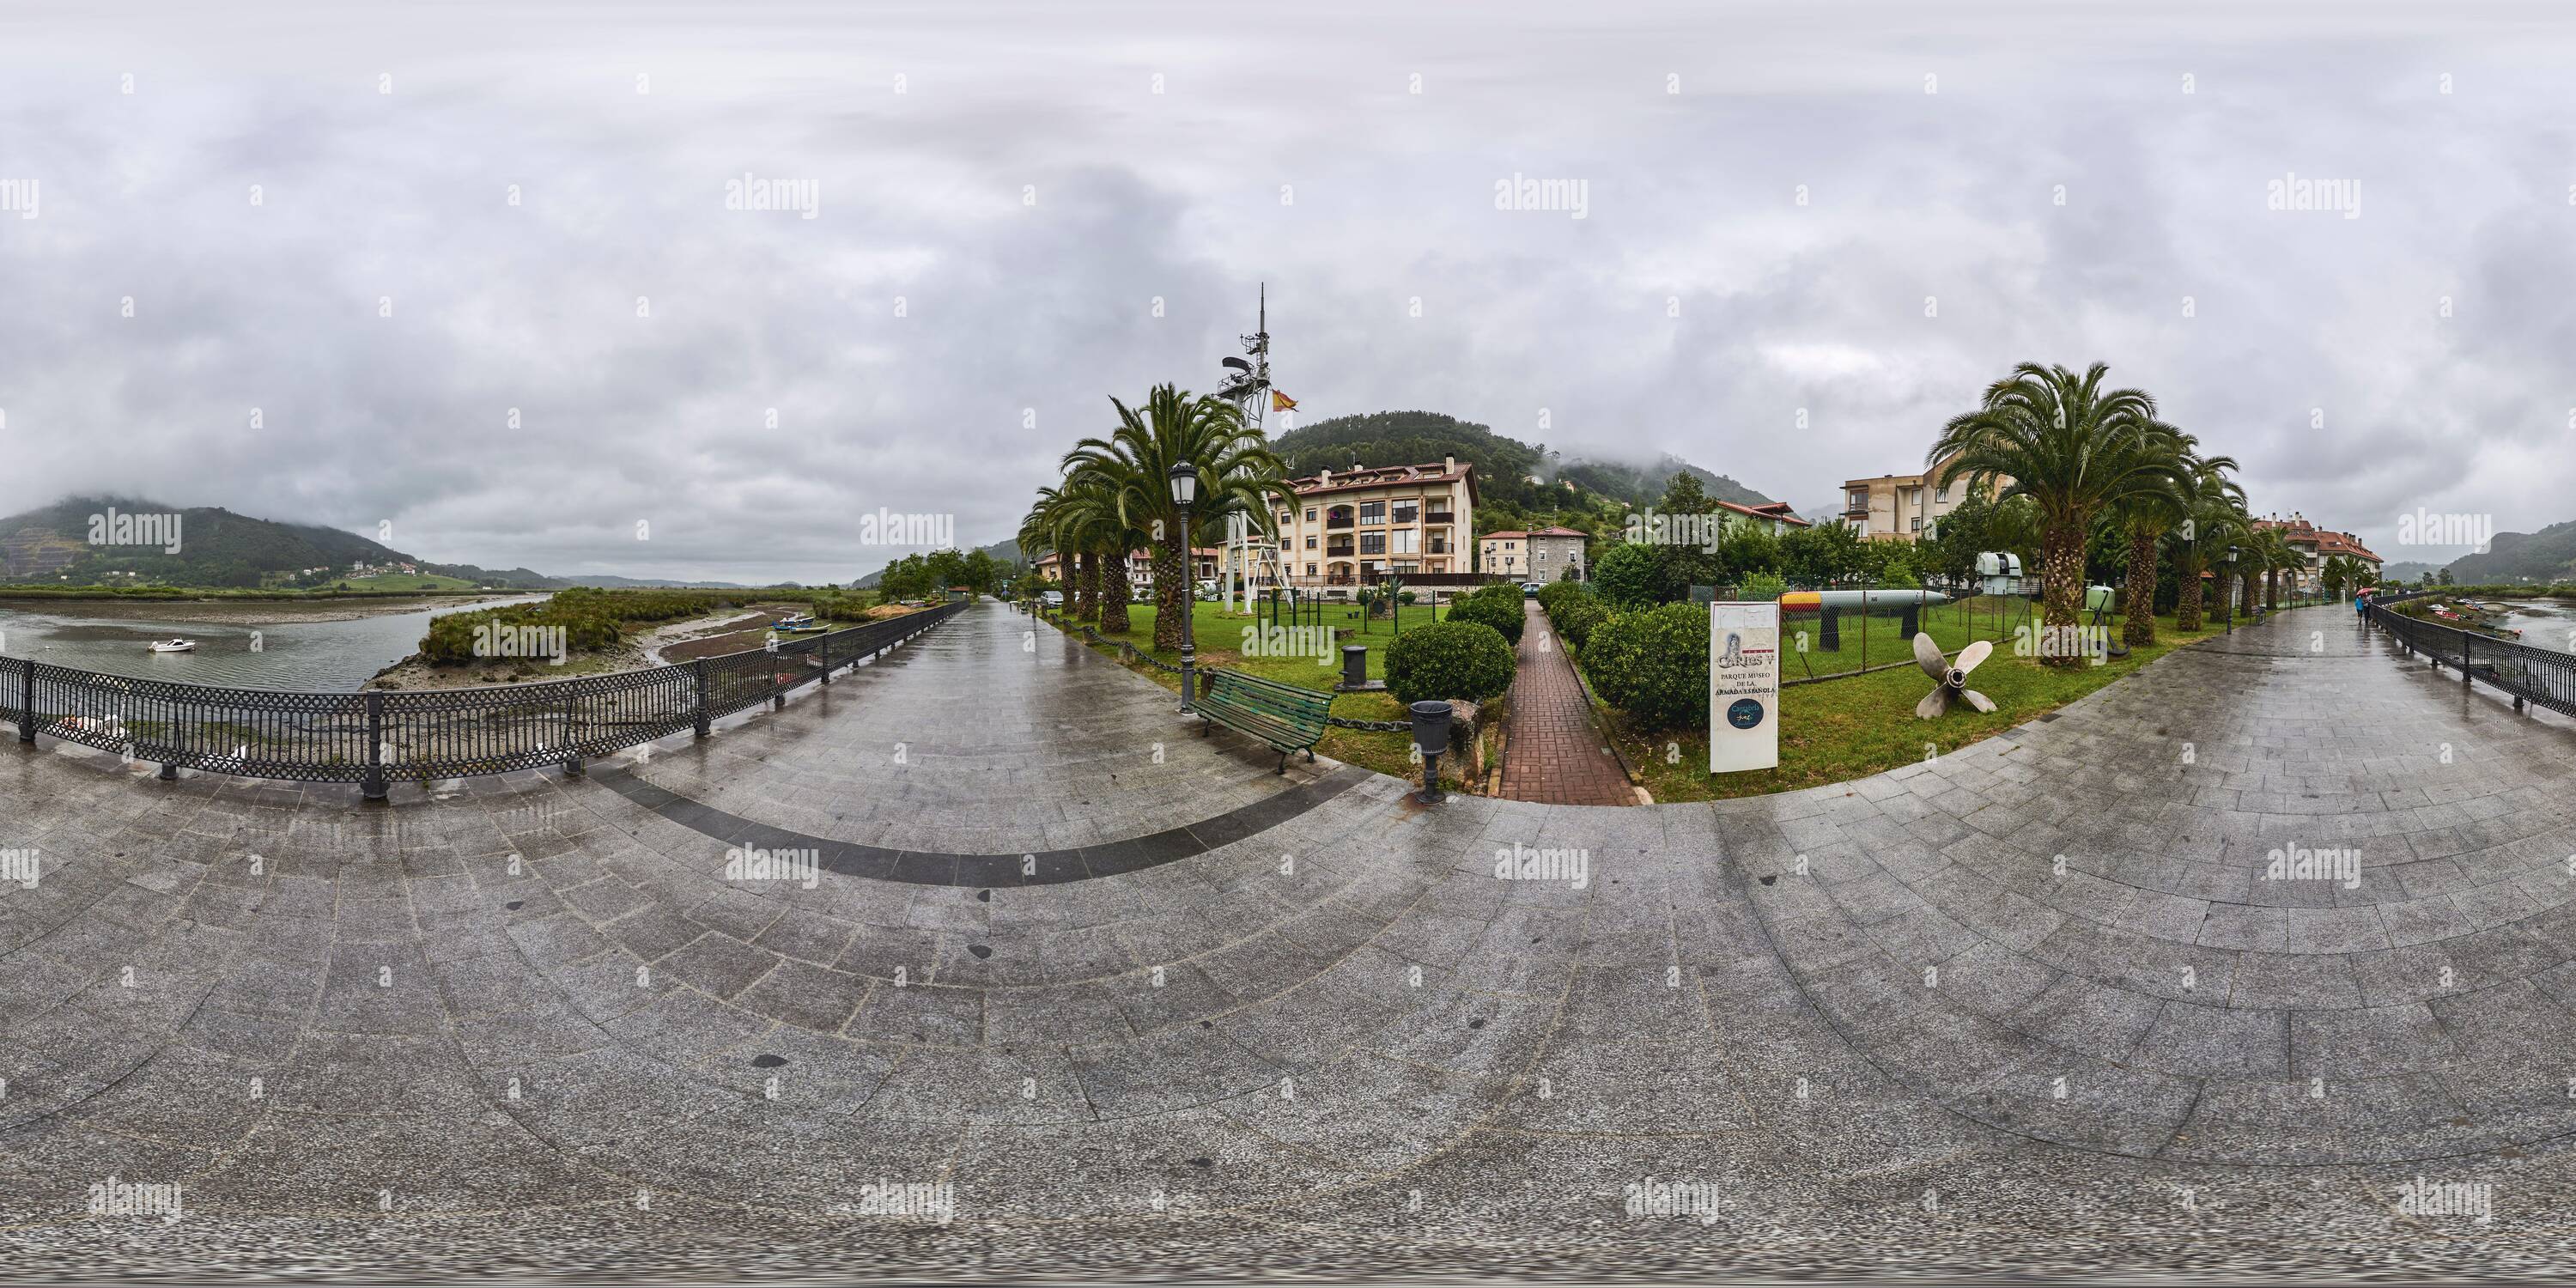 Visualizzazione panoramica a 360 gradi di 360° panoramico: Museo del Parco Hispaniola sulla passeggiata del fiume Ason nel comune di Limpias, Cantabria, Spagna, Europa